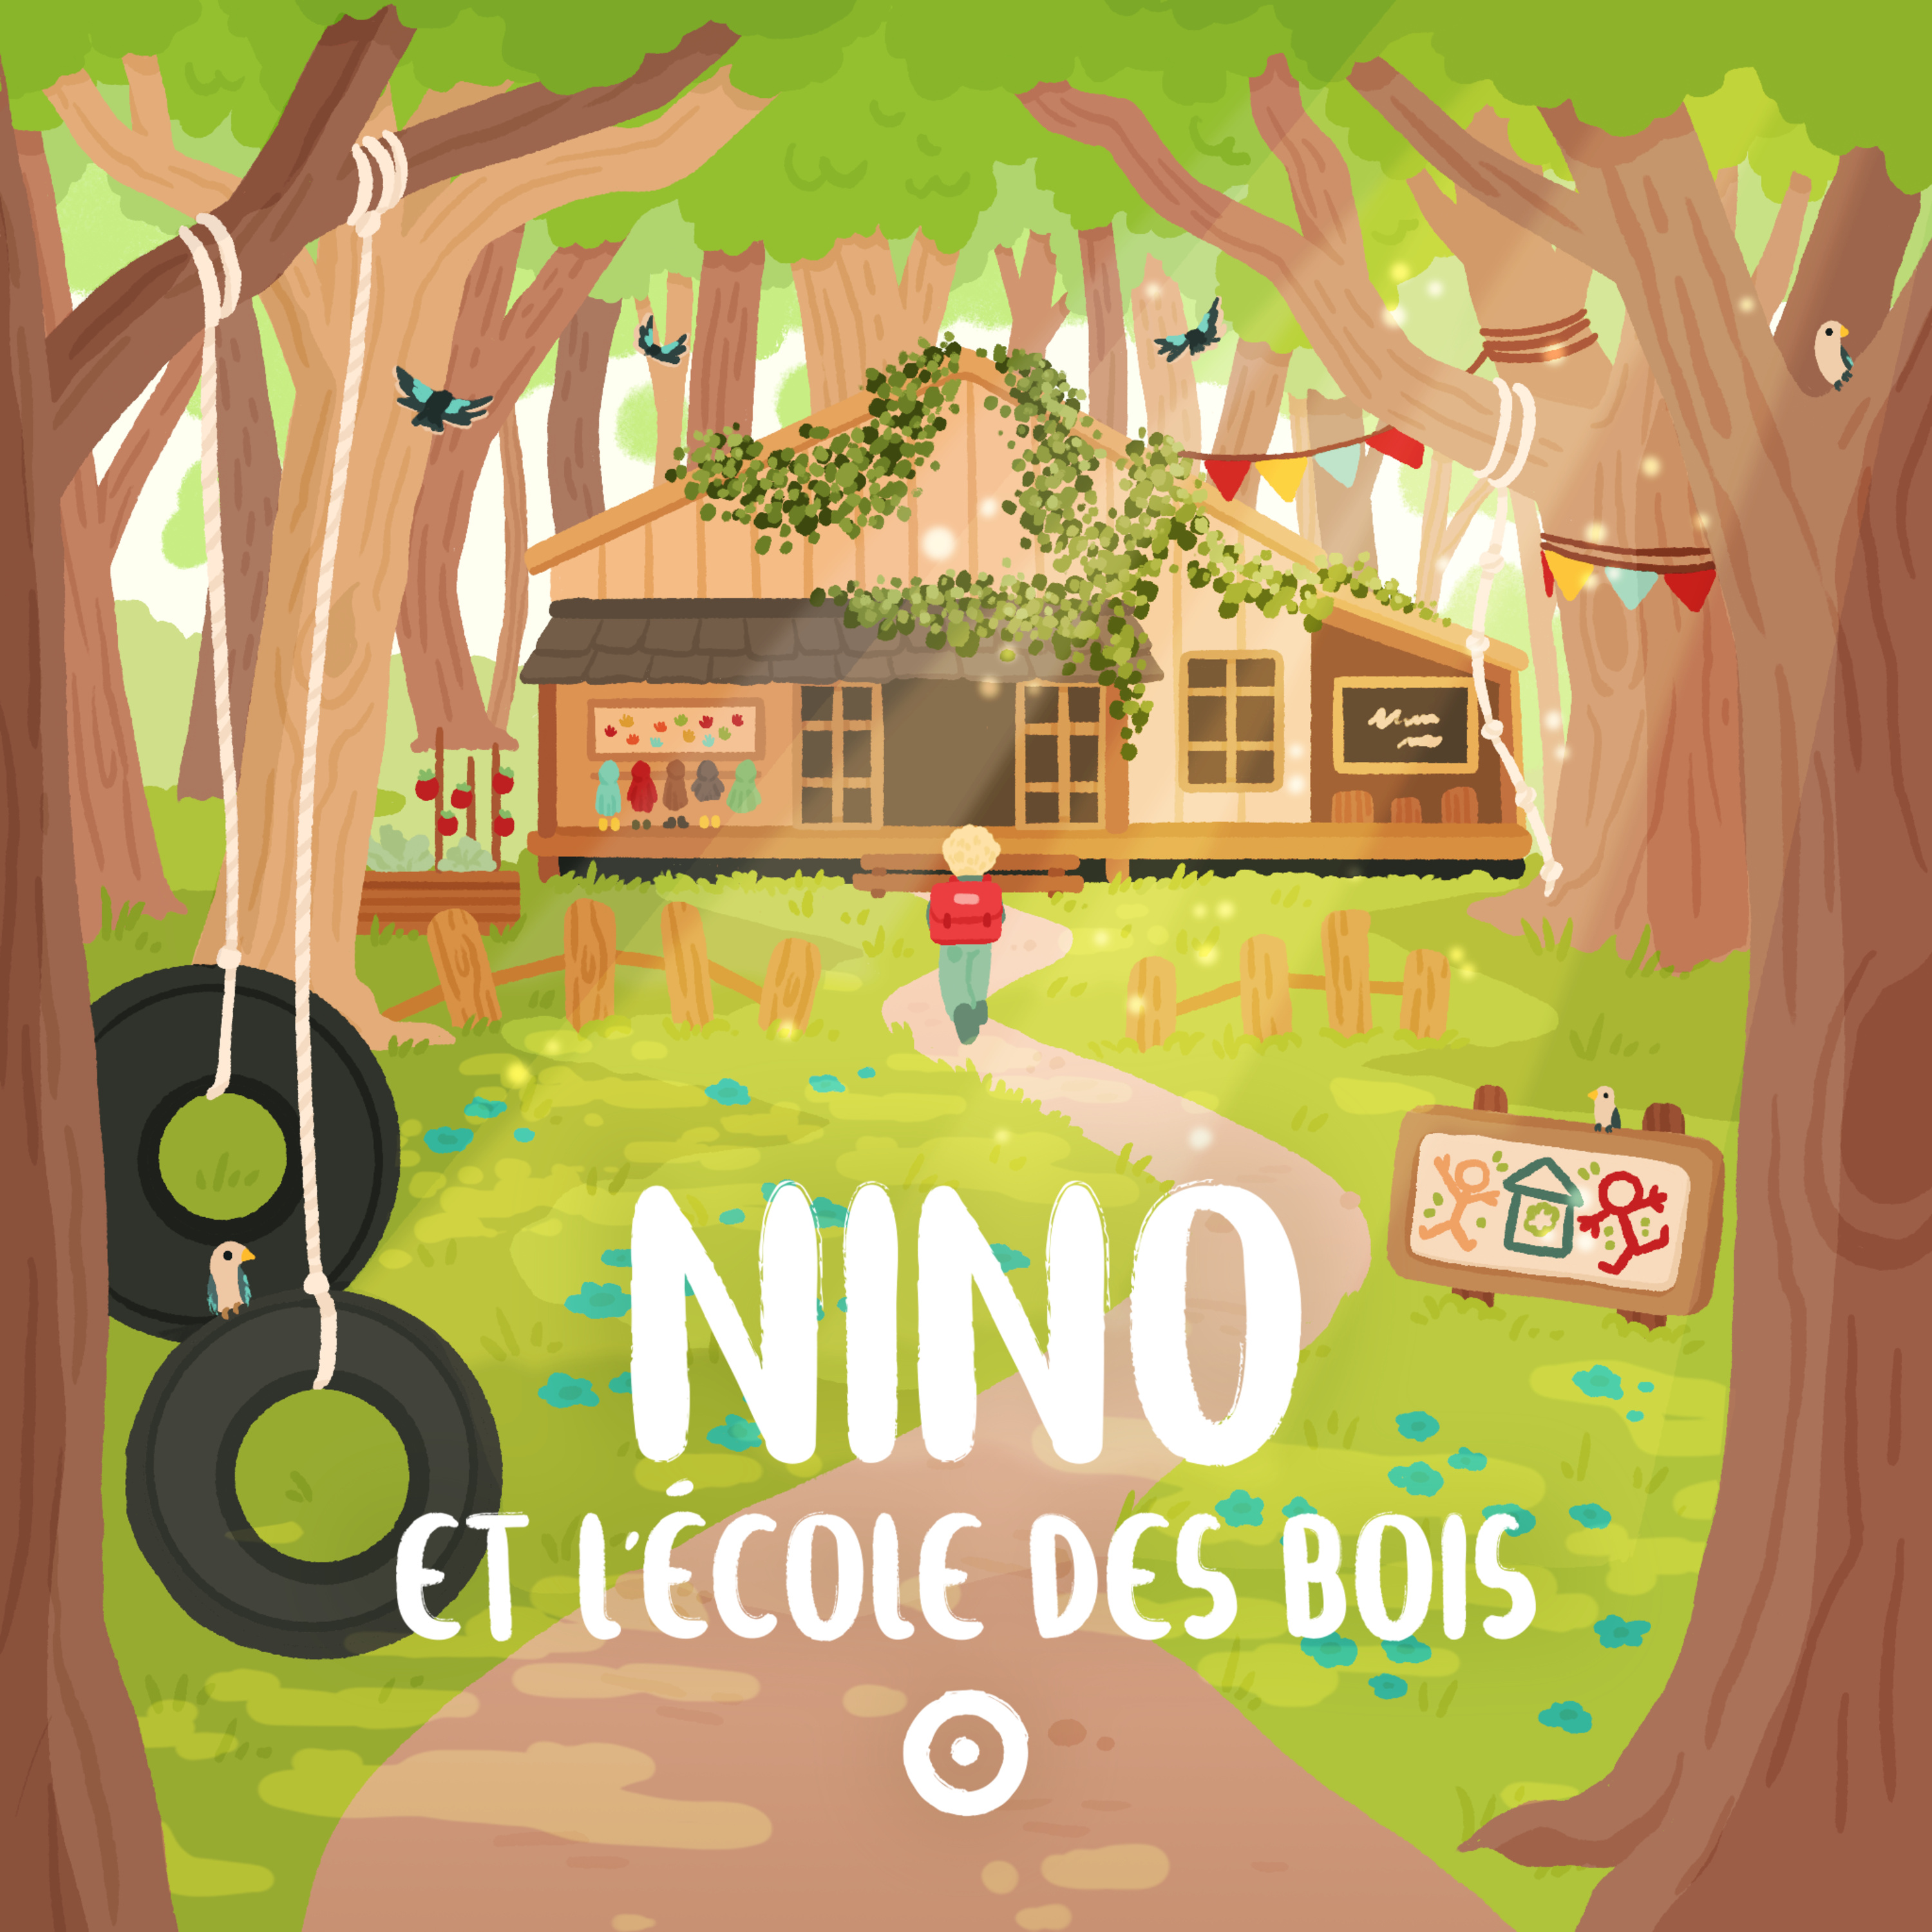 Episode 3 - Nino et l'école des bois - Un drôle d'oiseau